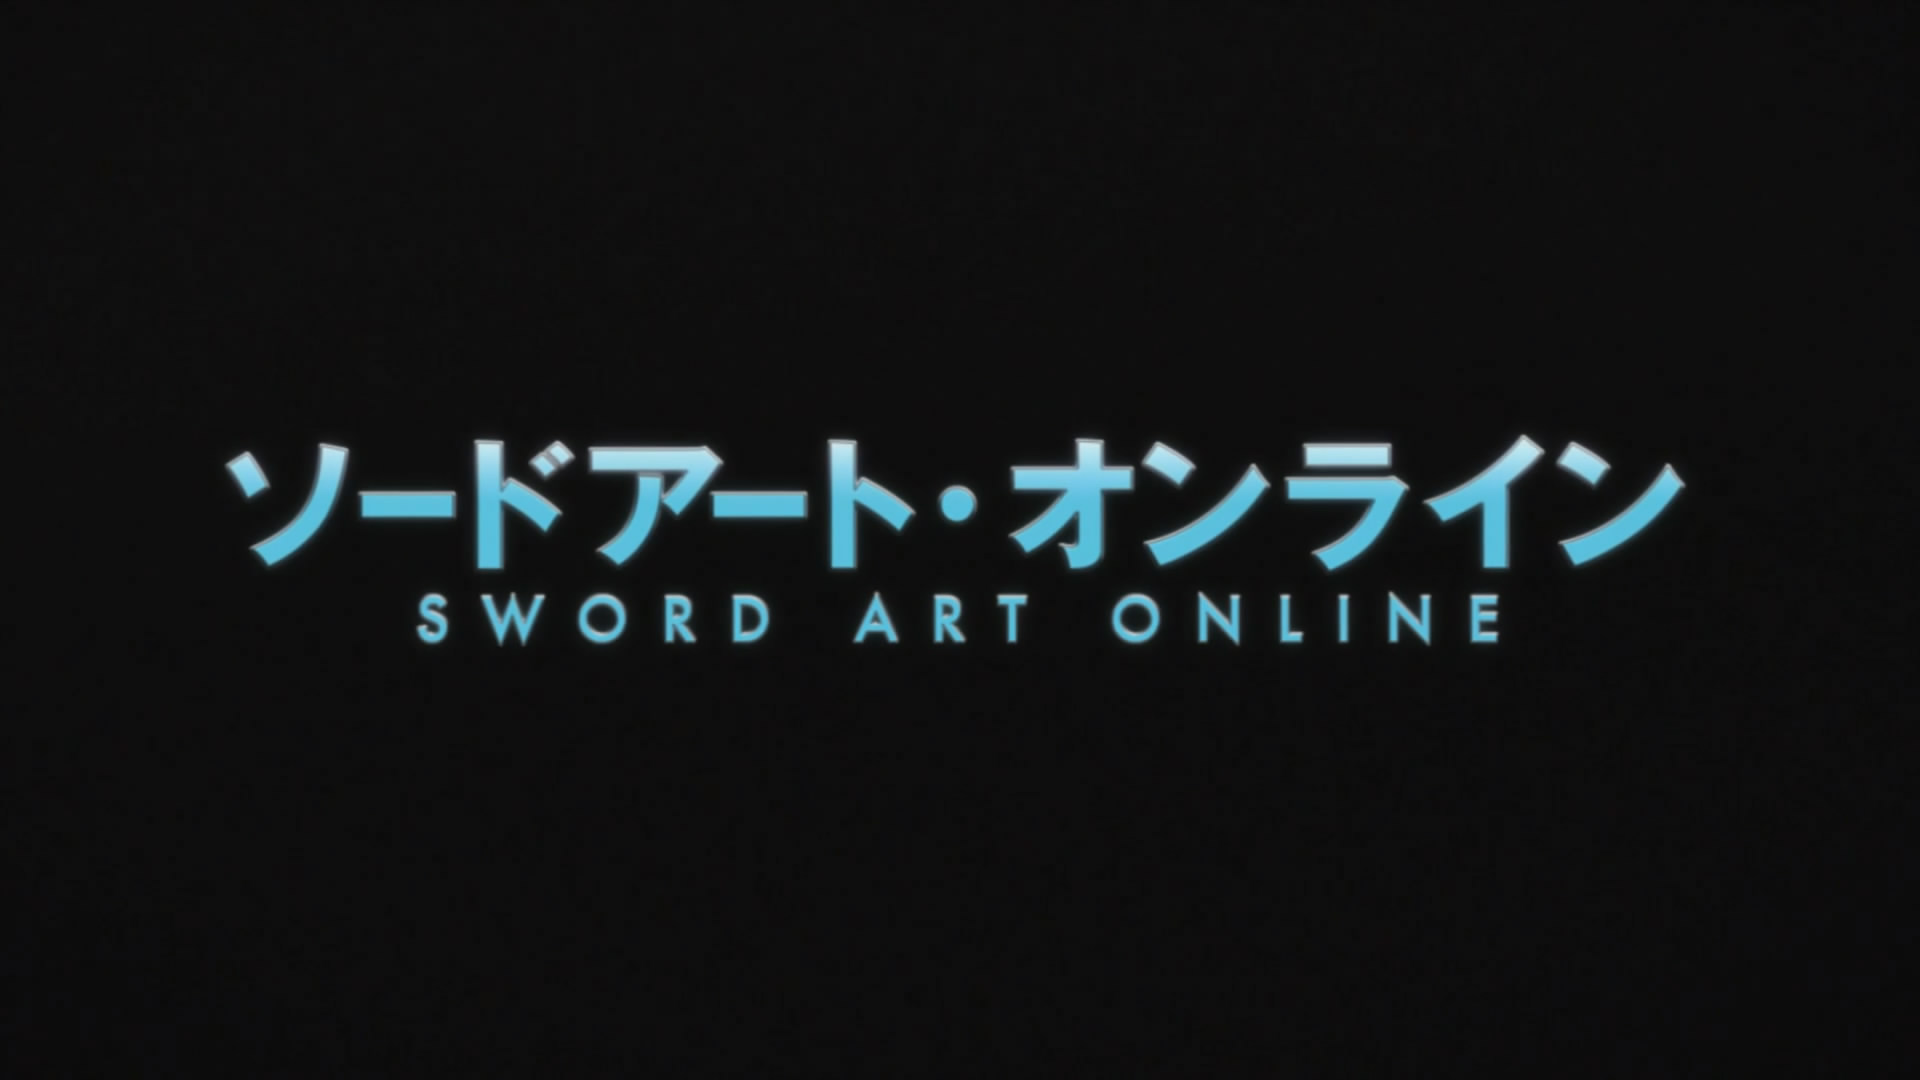 Download HorribleSubs Sword Art Online Season 1 2